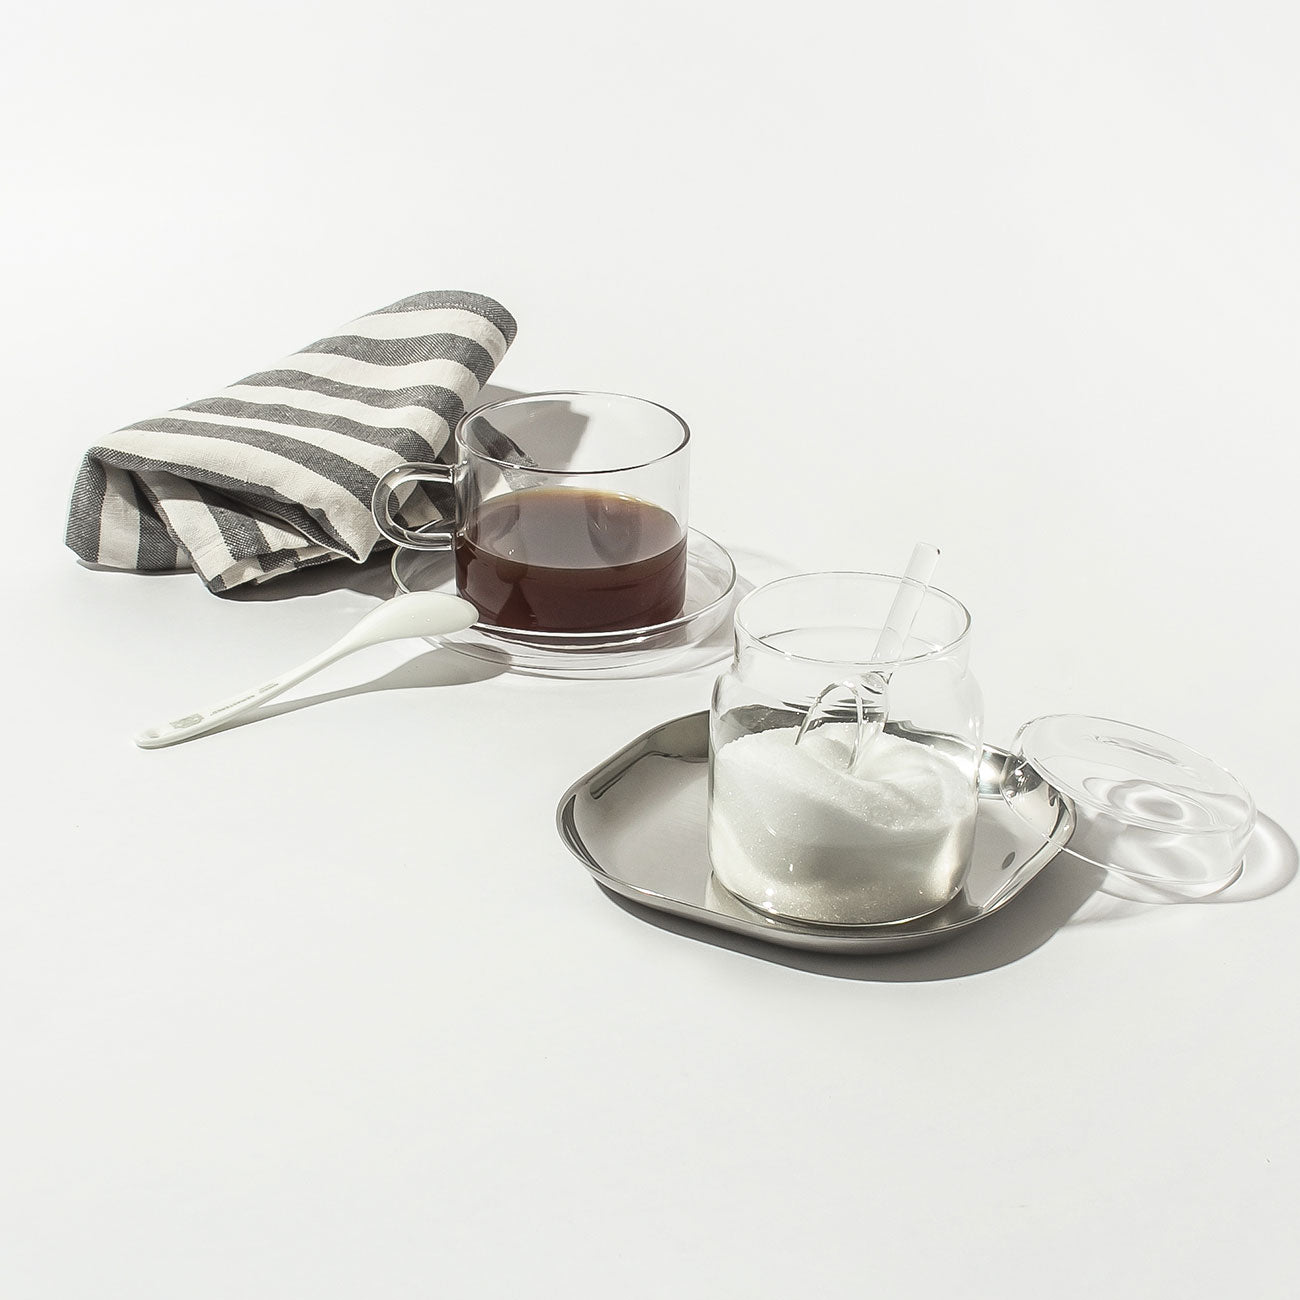 ICHENDORF MILANO(イッケンドルフ ミラノ) sugarpot with GLASS SPOON | Lost and Found ティーアイテム ガラス シュガー(ガラス) イタリア製ガラススプーン付きシュガーポット